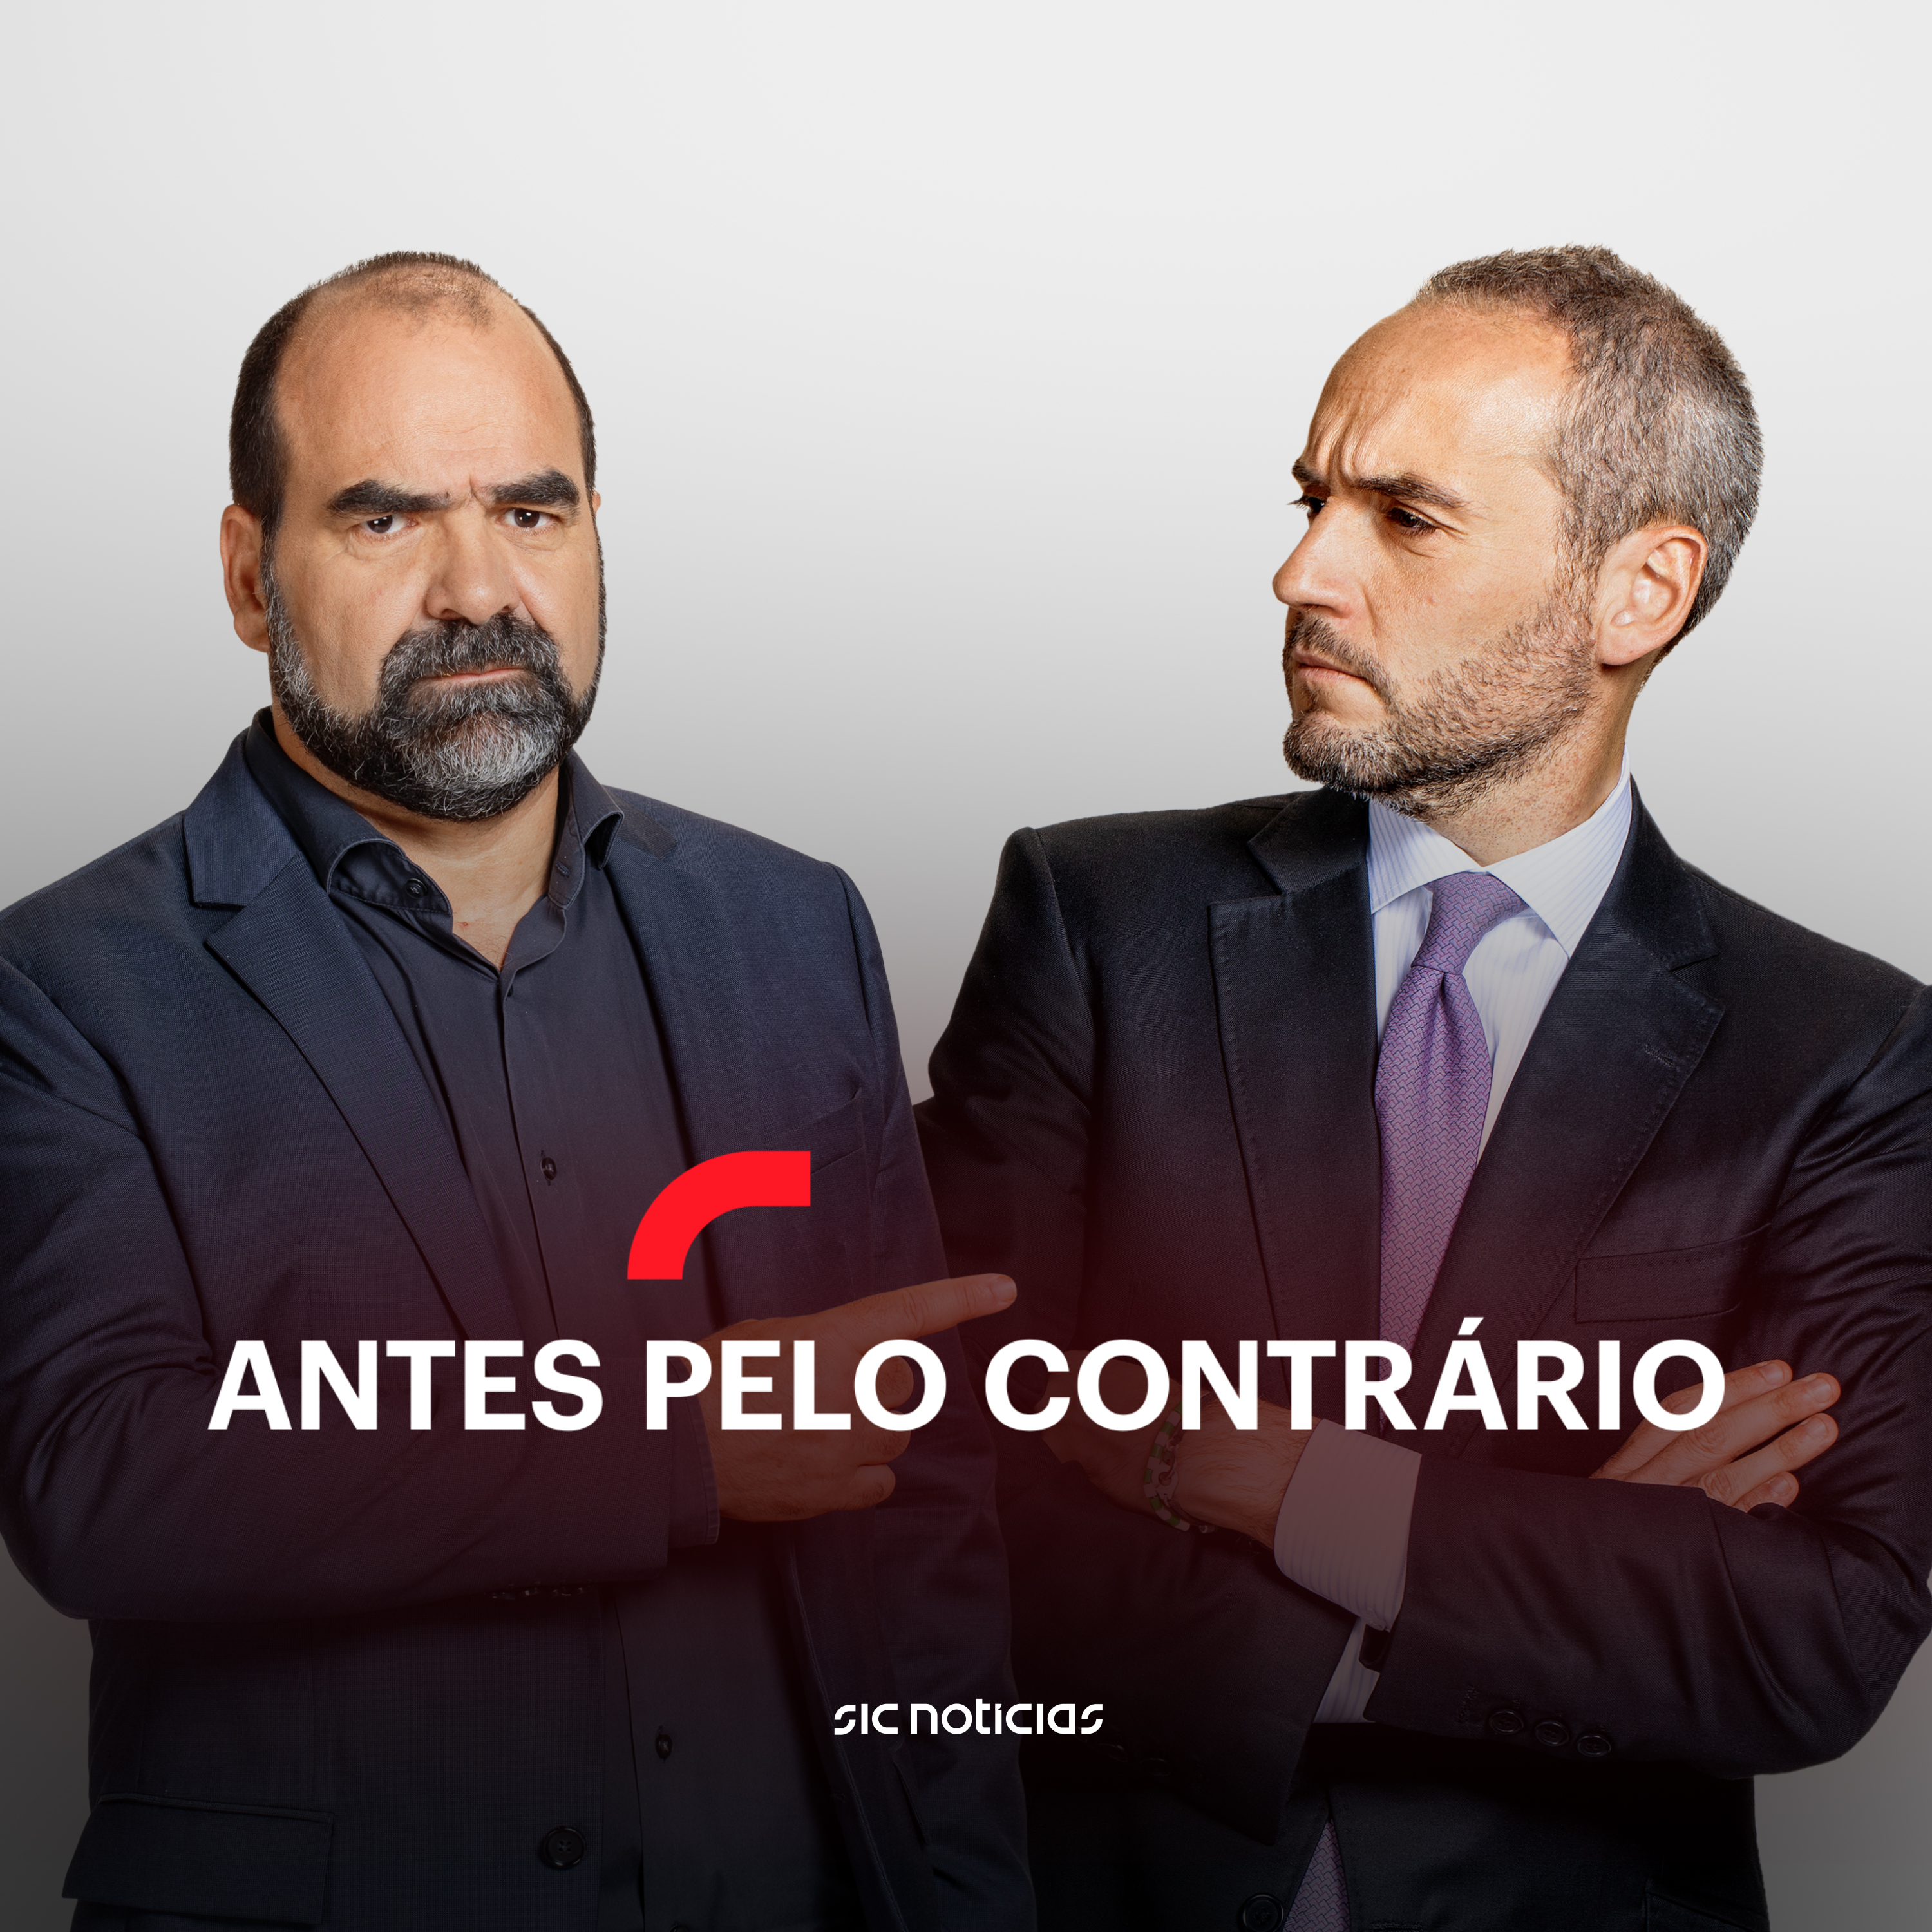 O erro de Marcelo, segundo António Costa: análise à entrevista